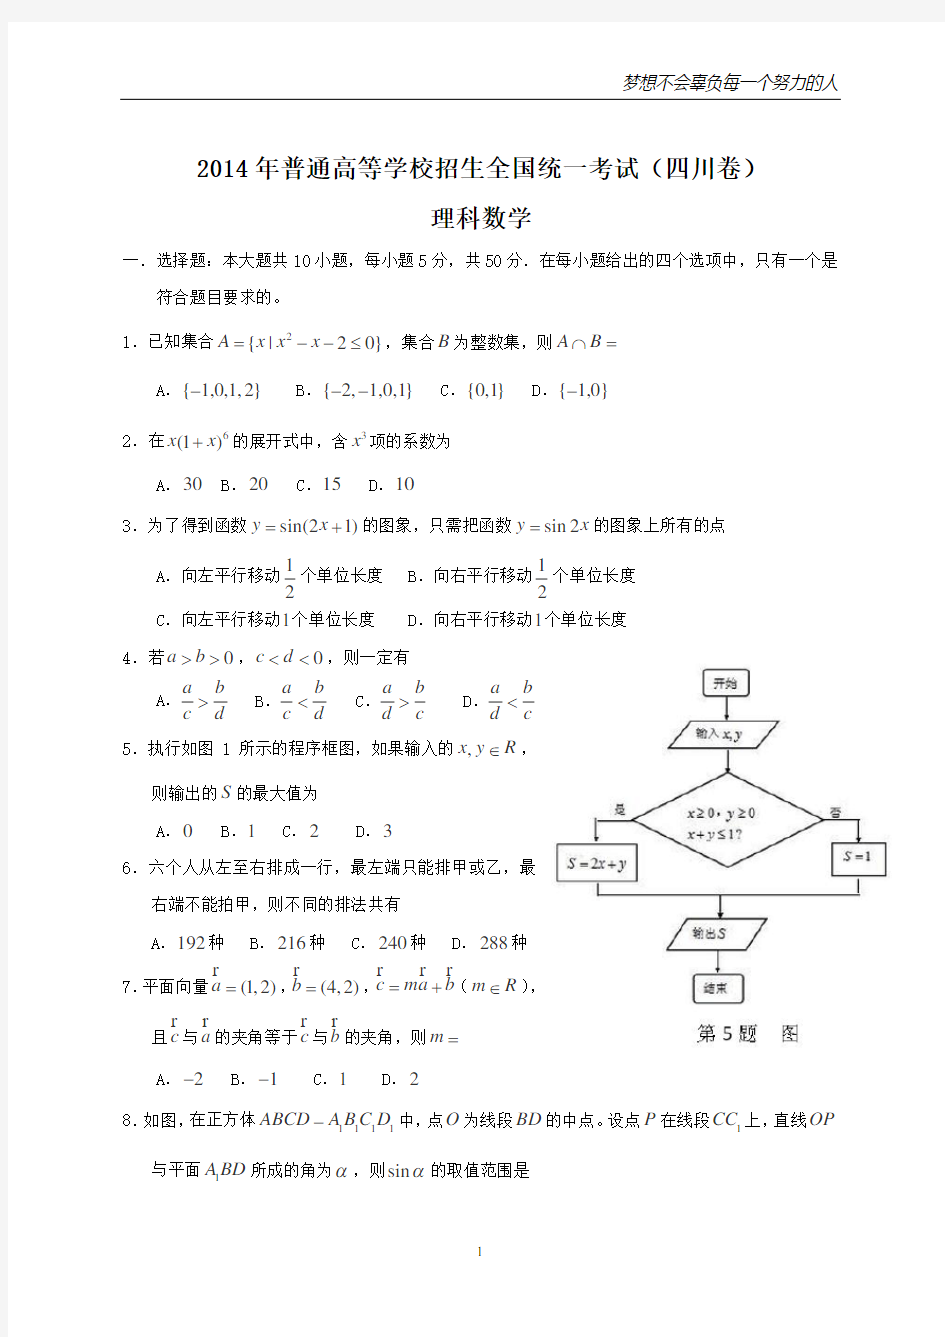 2014年全国高考理科数学试题及答案-四川卷